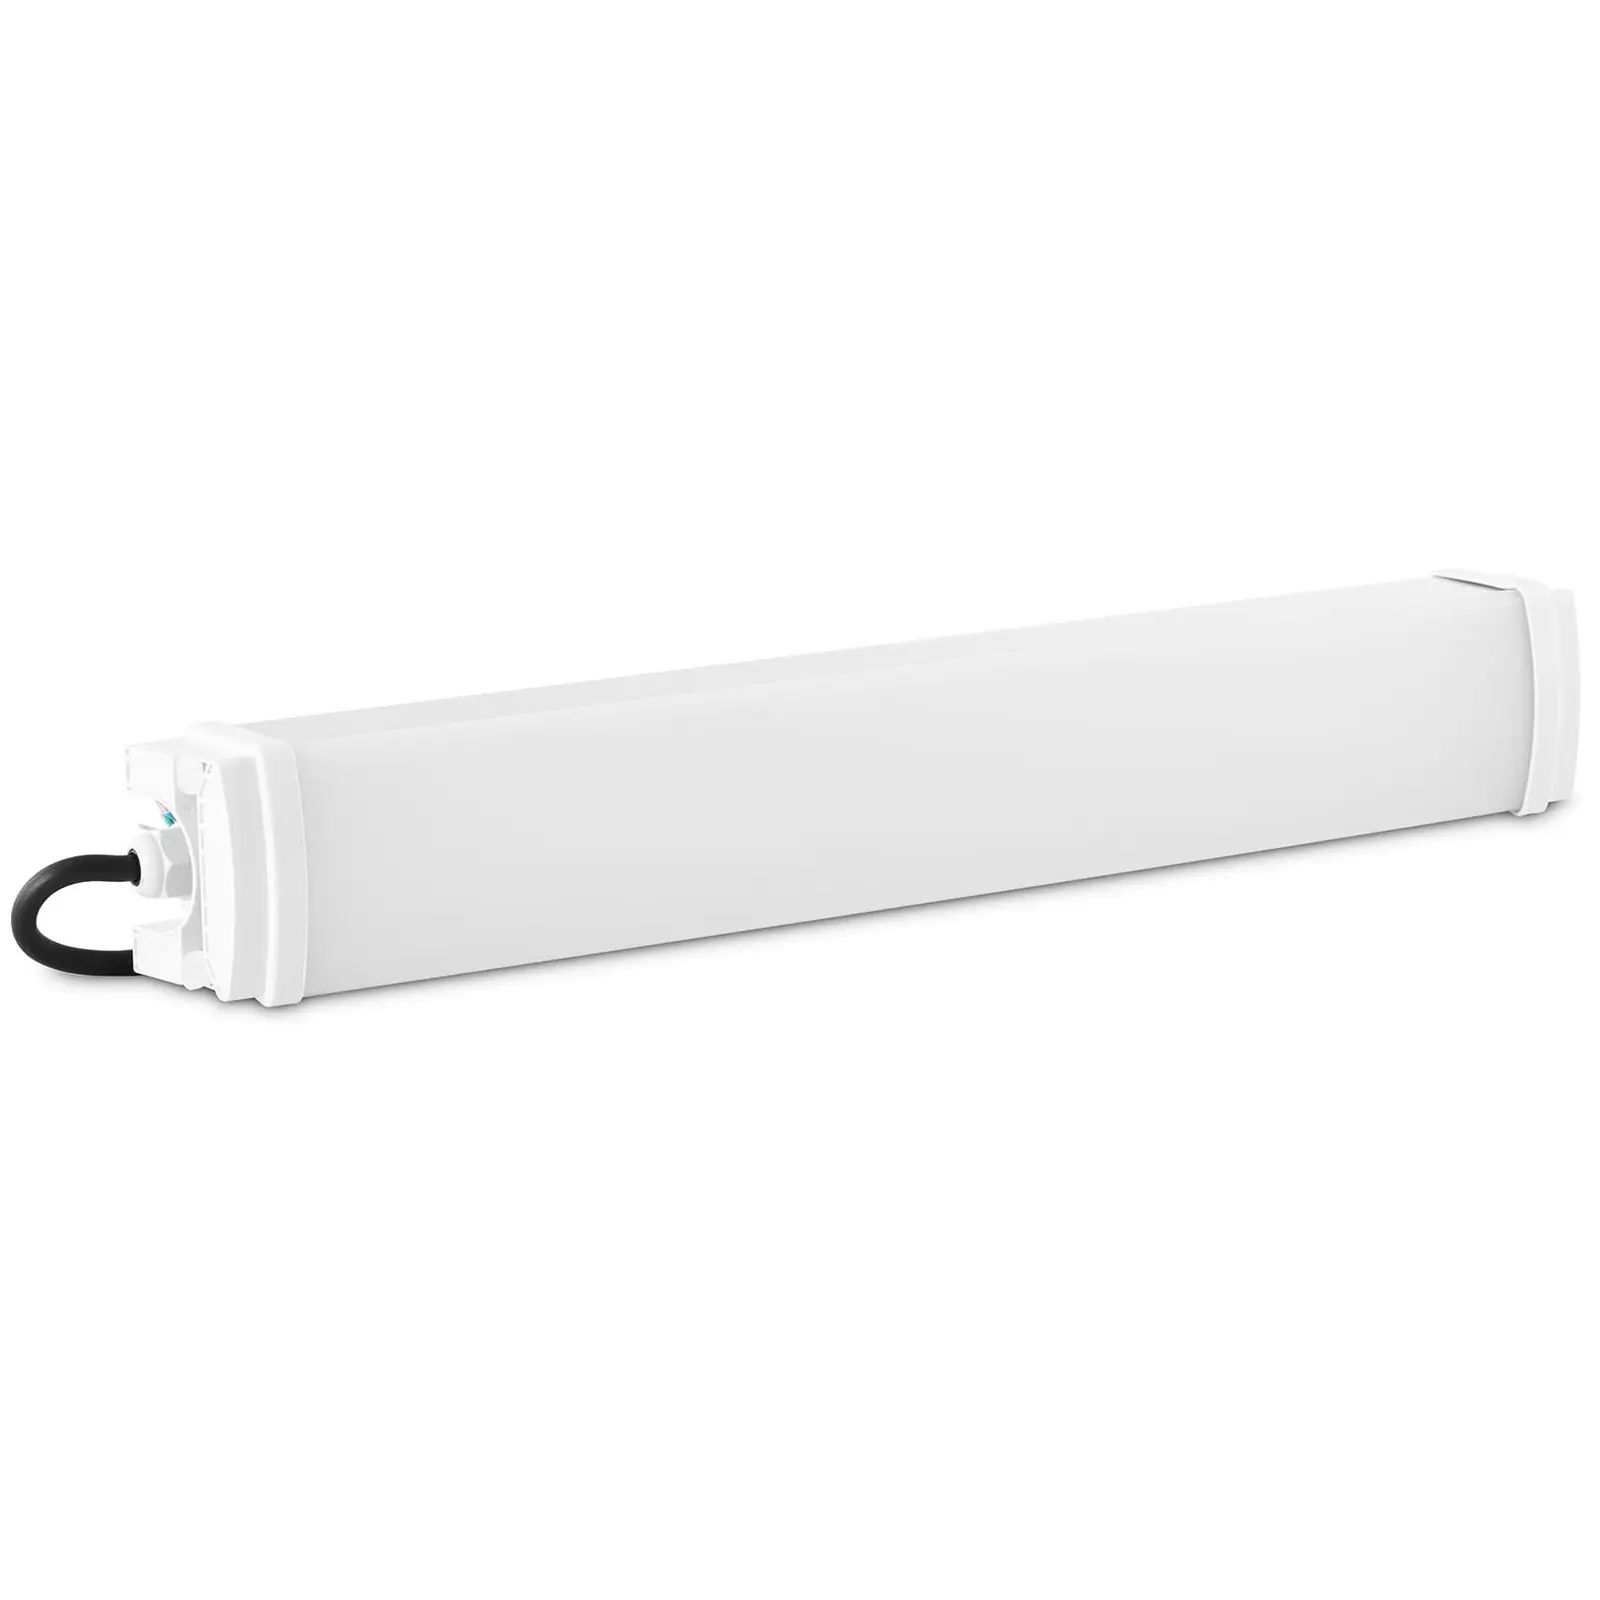 Réglette LED étanche - 30 W - 60 cm